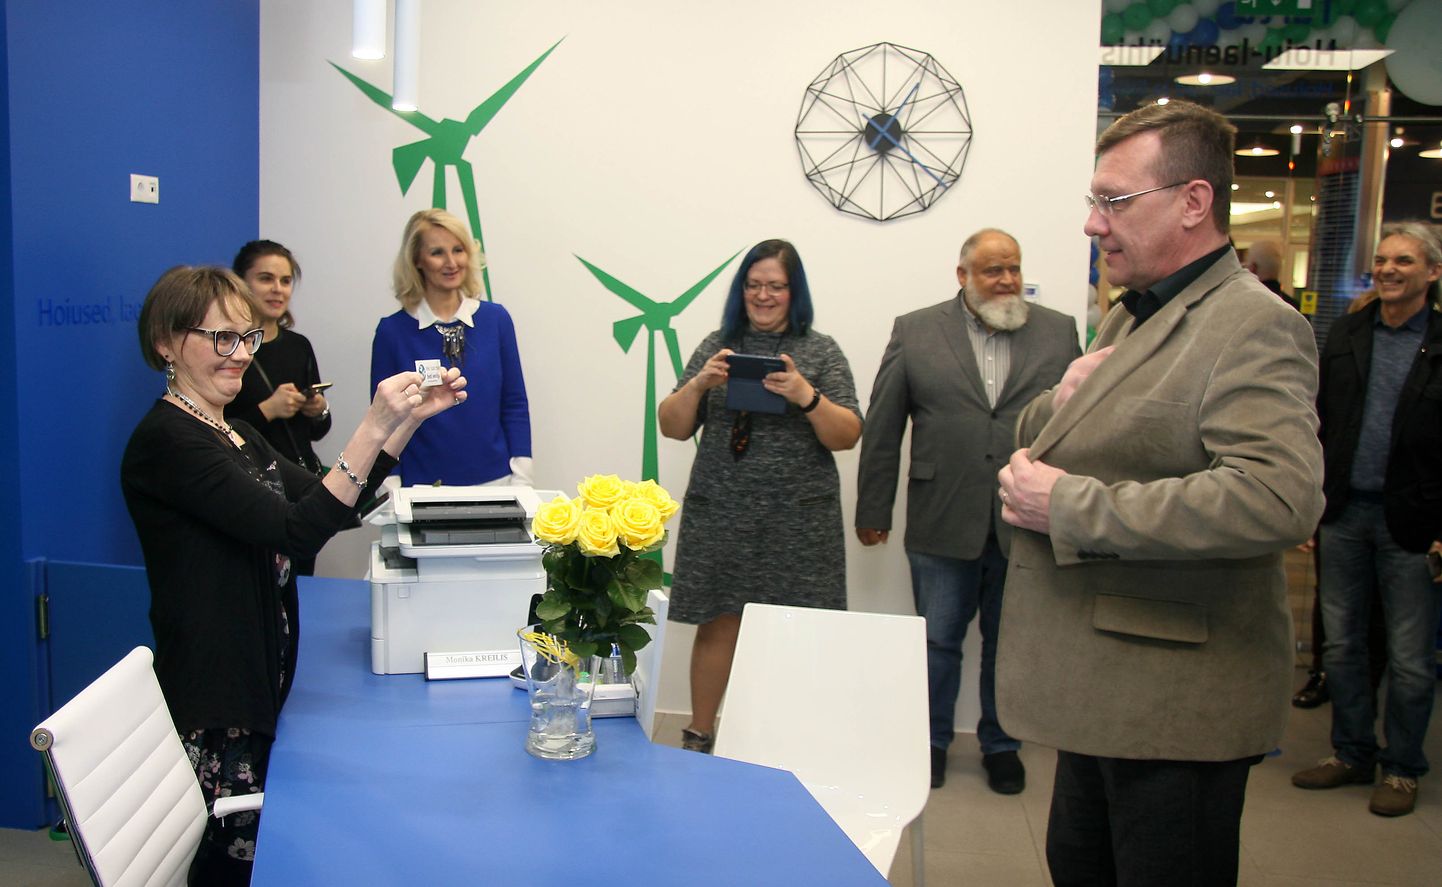 Руководитель новой конторы Марика Крейлис (слева) вручает визитку первому вкладчику в этот день - нарвскому предпринимателю Андрусу Тамму.